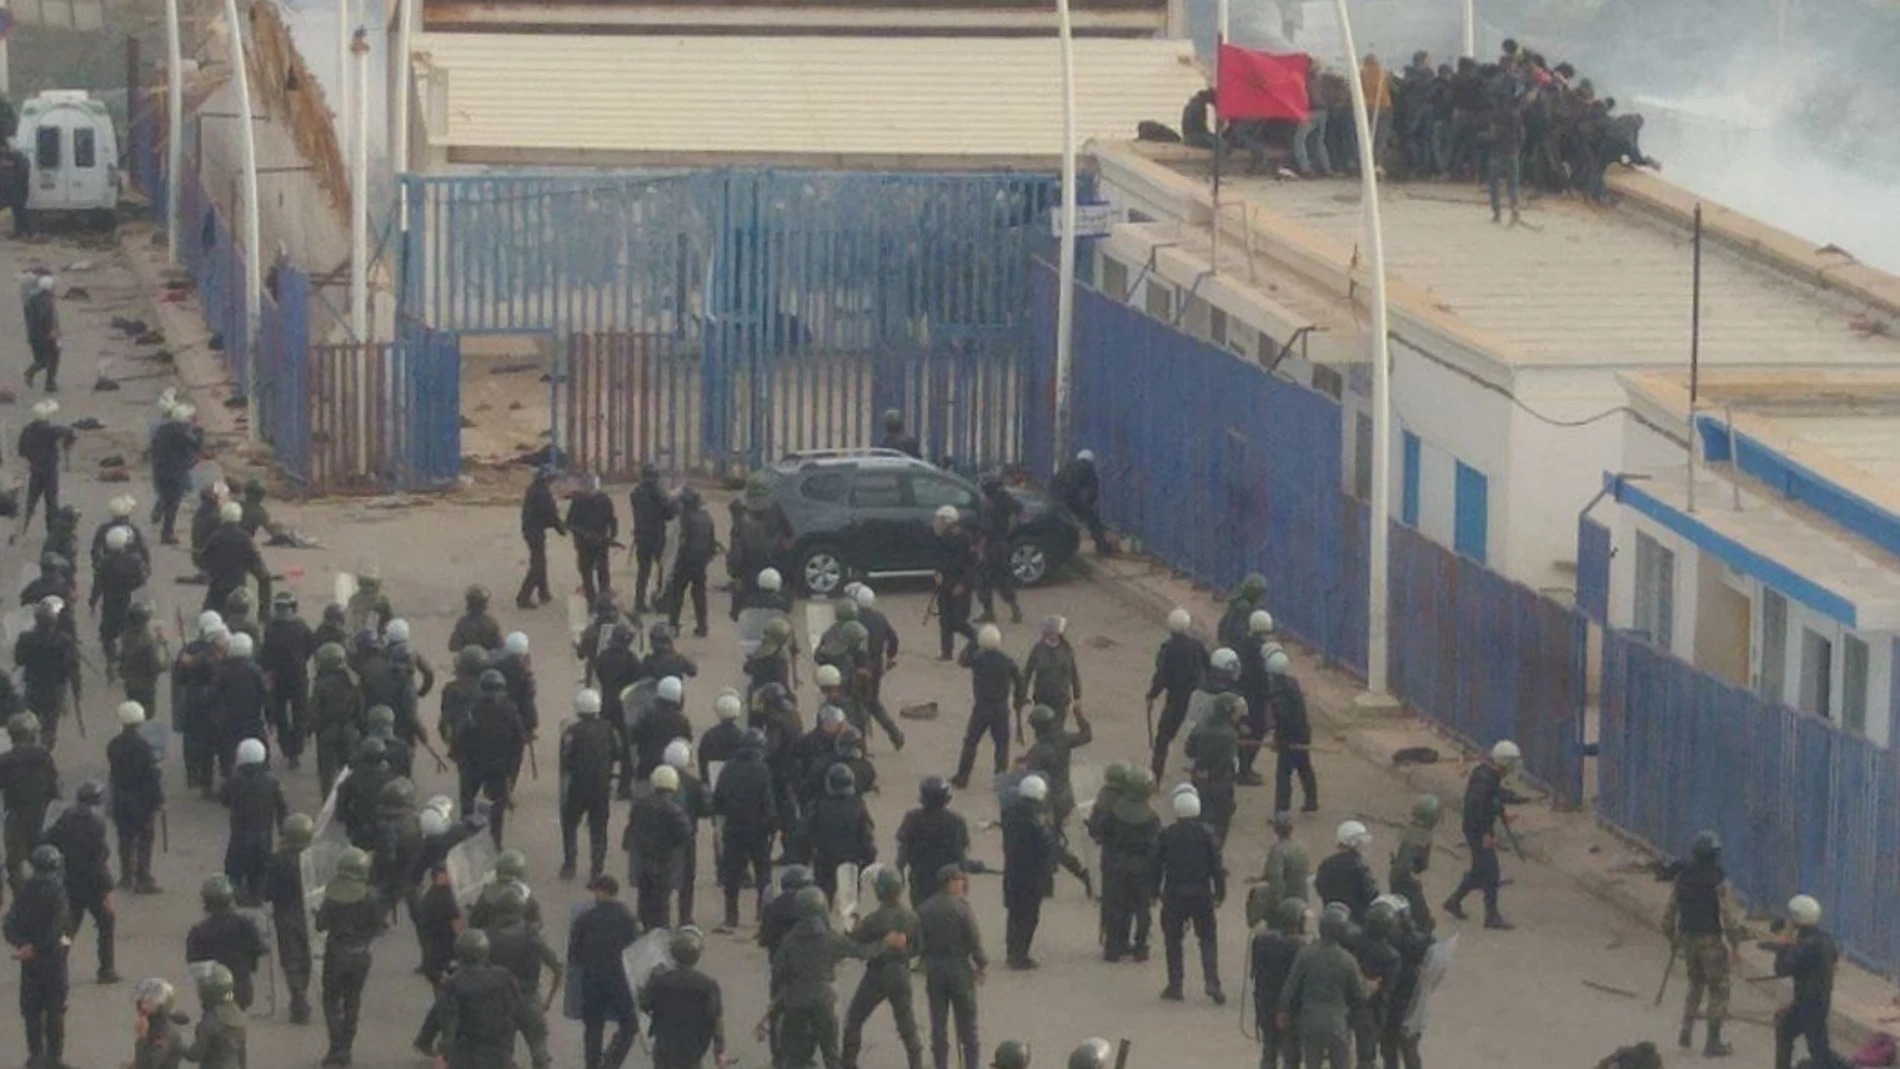  Posponen el juicio a 28 emigrantes por el salto de una valla en Melilla que dejó 23 muertos